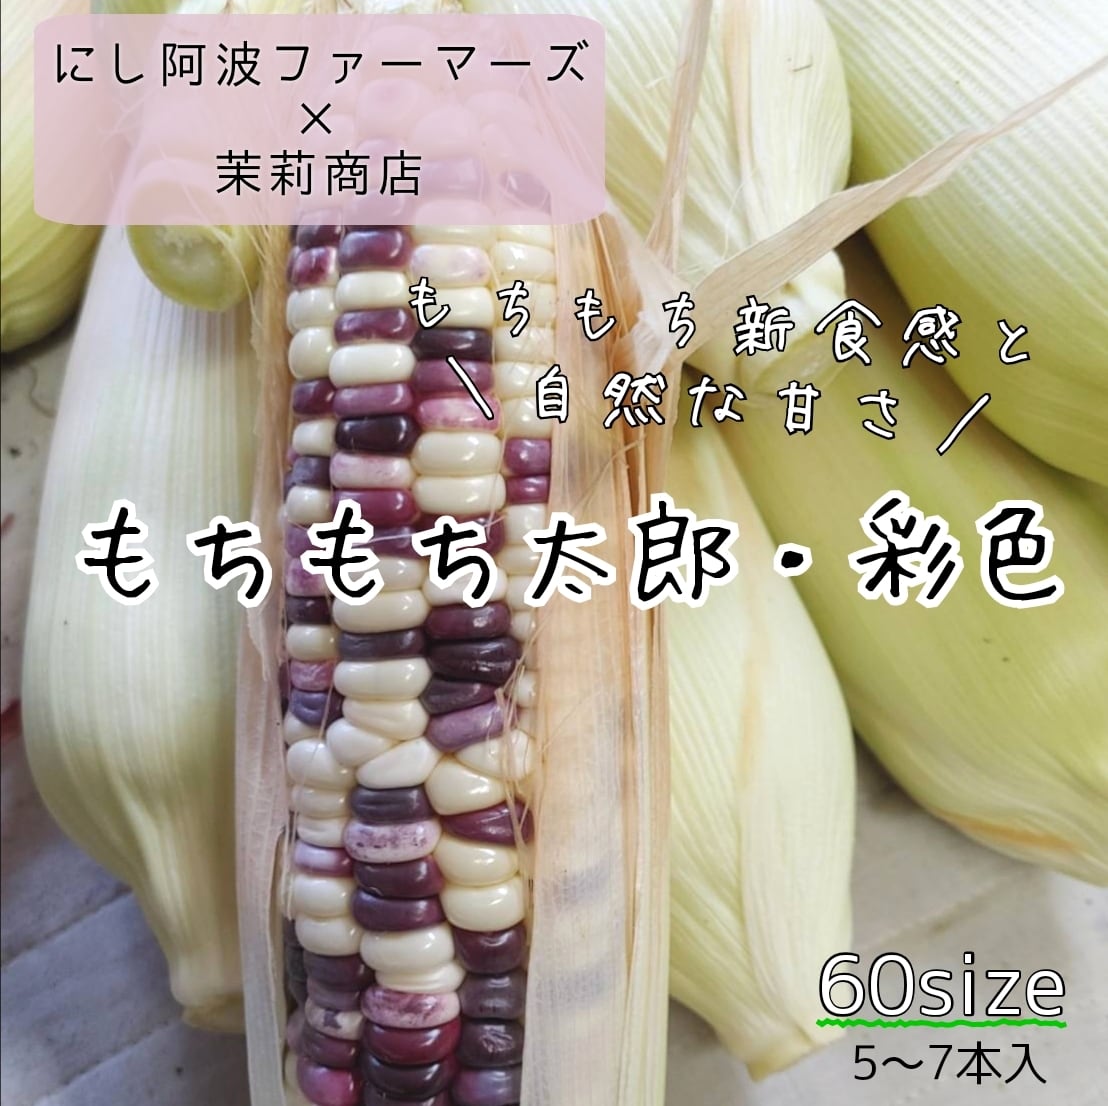 もちもち太郎(糯玉米) 彩色 60size(5～7本) 徳島県産 もちプチ感と自然